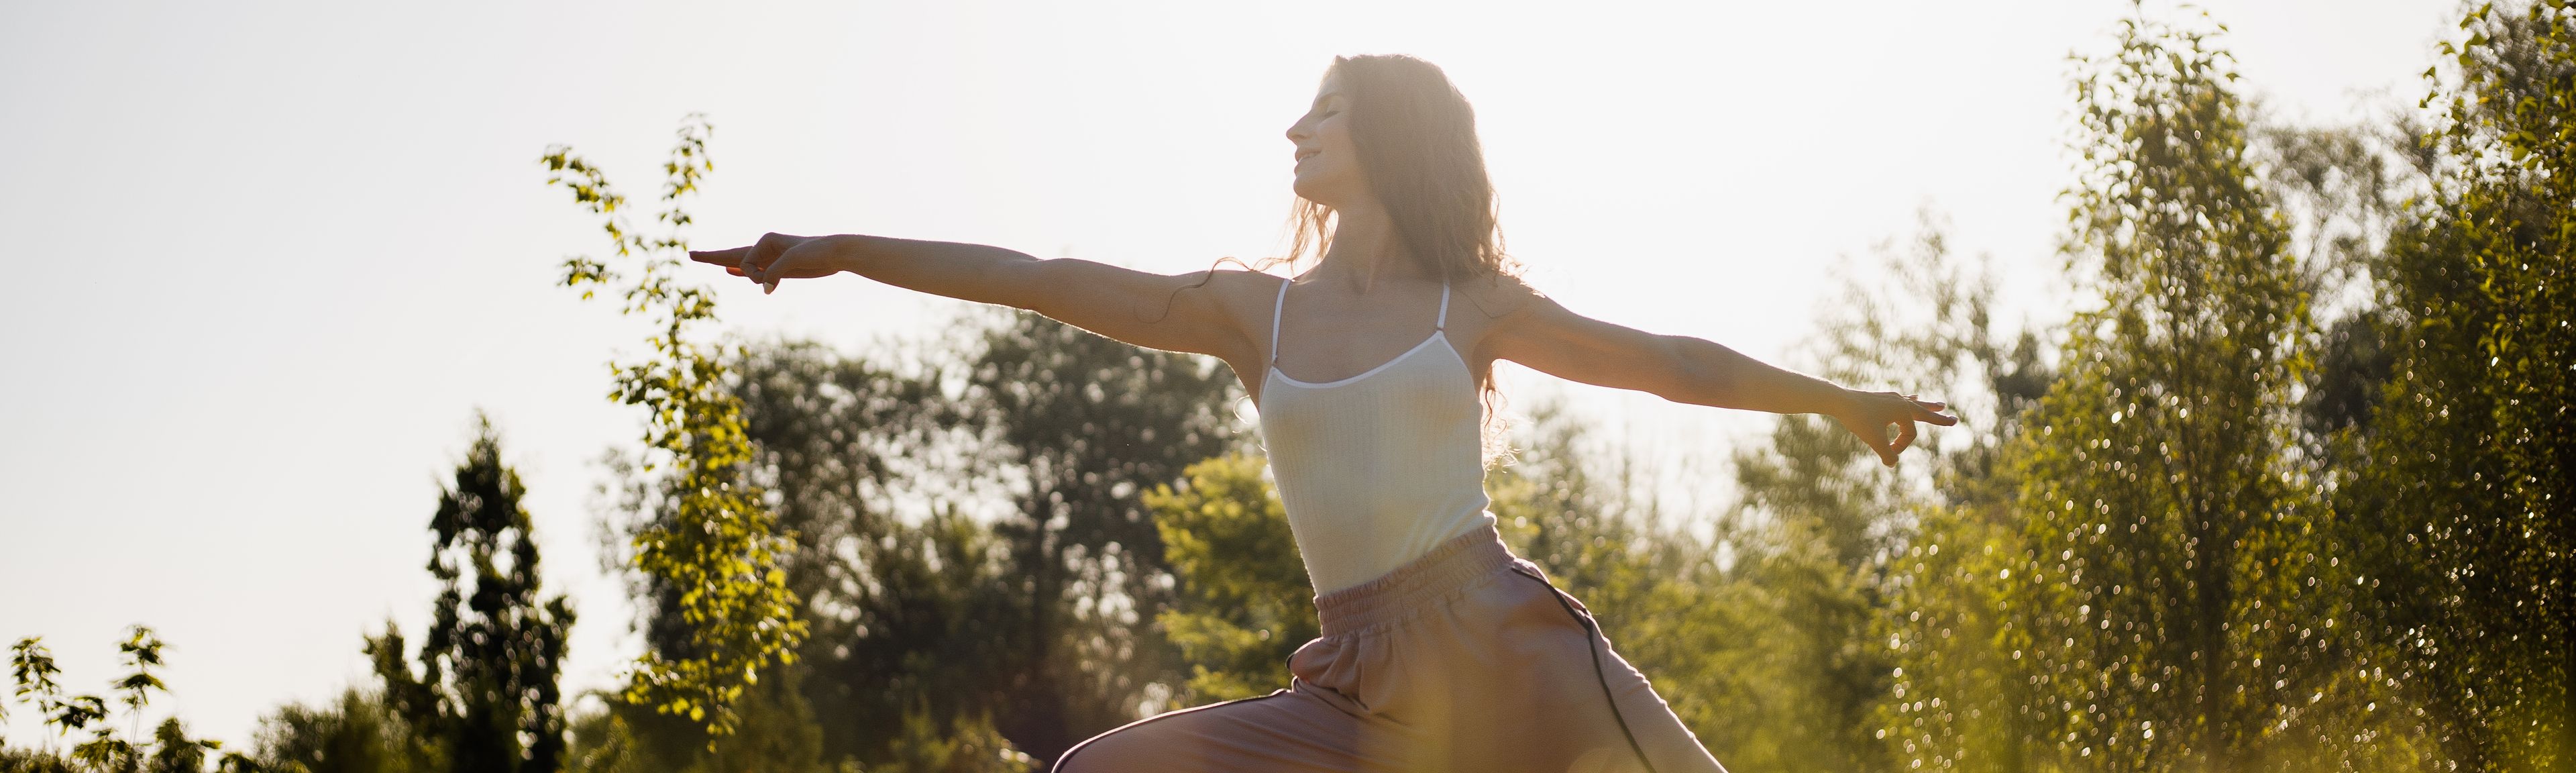 Frau macht Yoga in grüner Natur